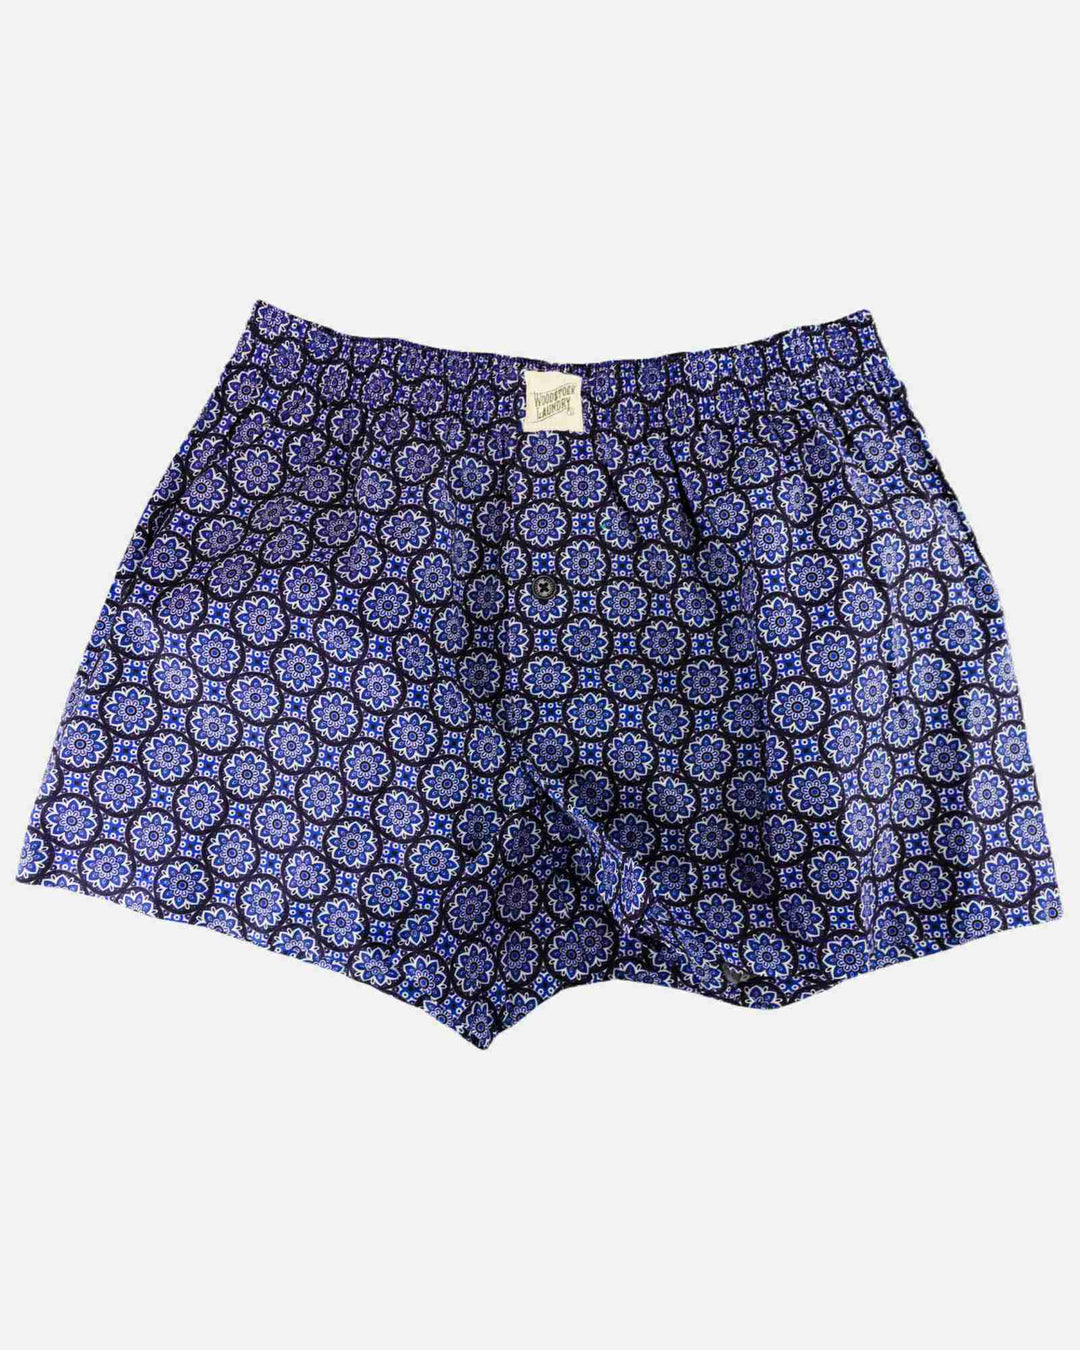 Mens boxer shorts - indigo floral